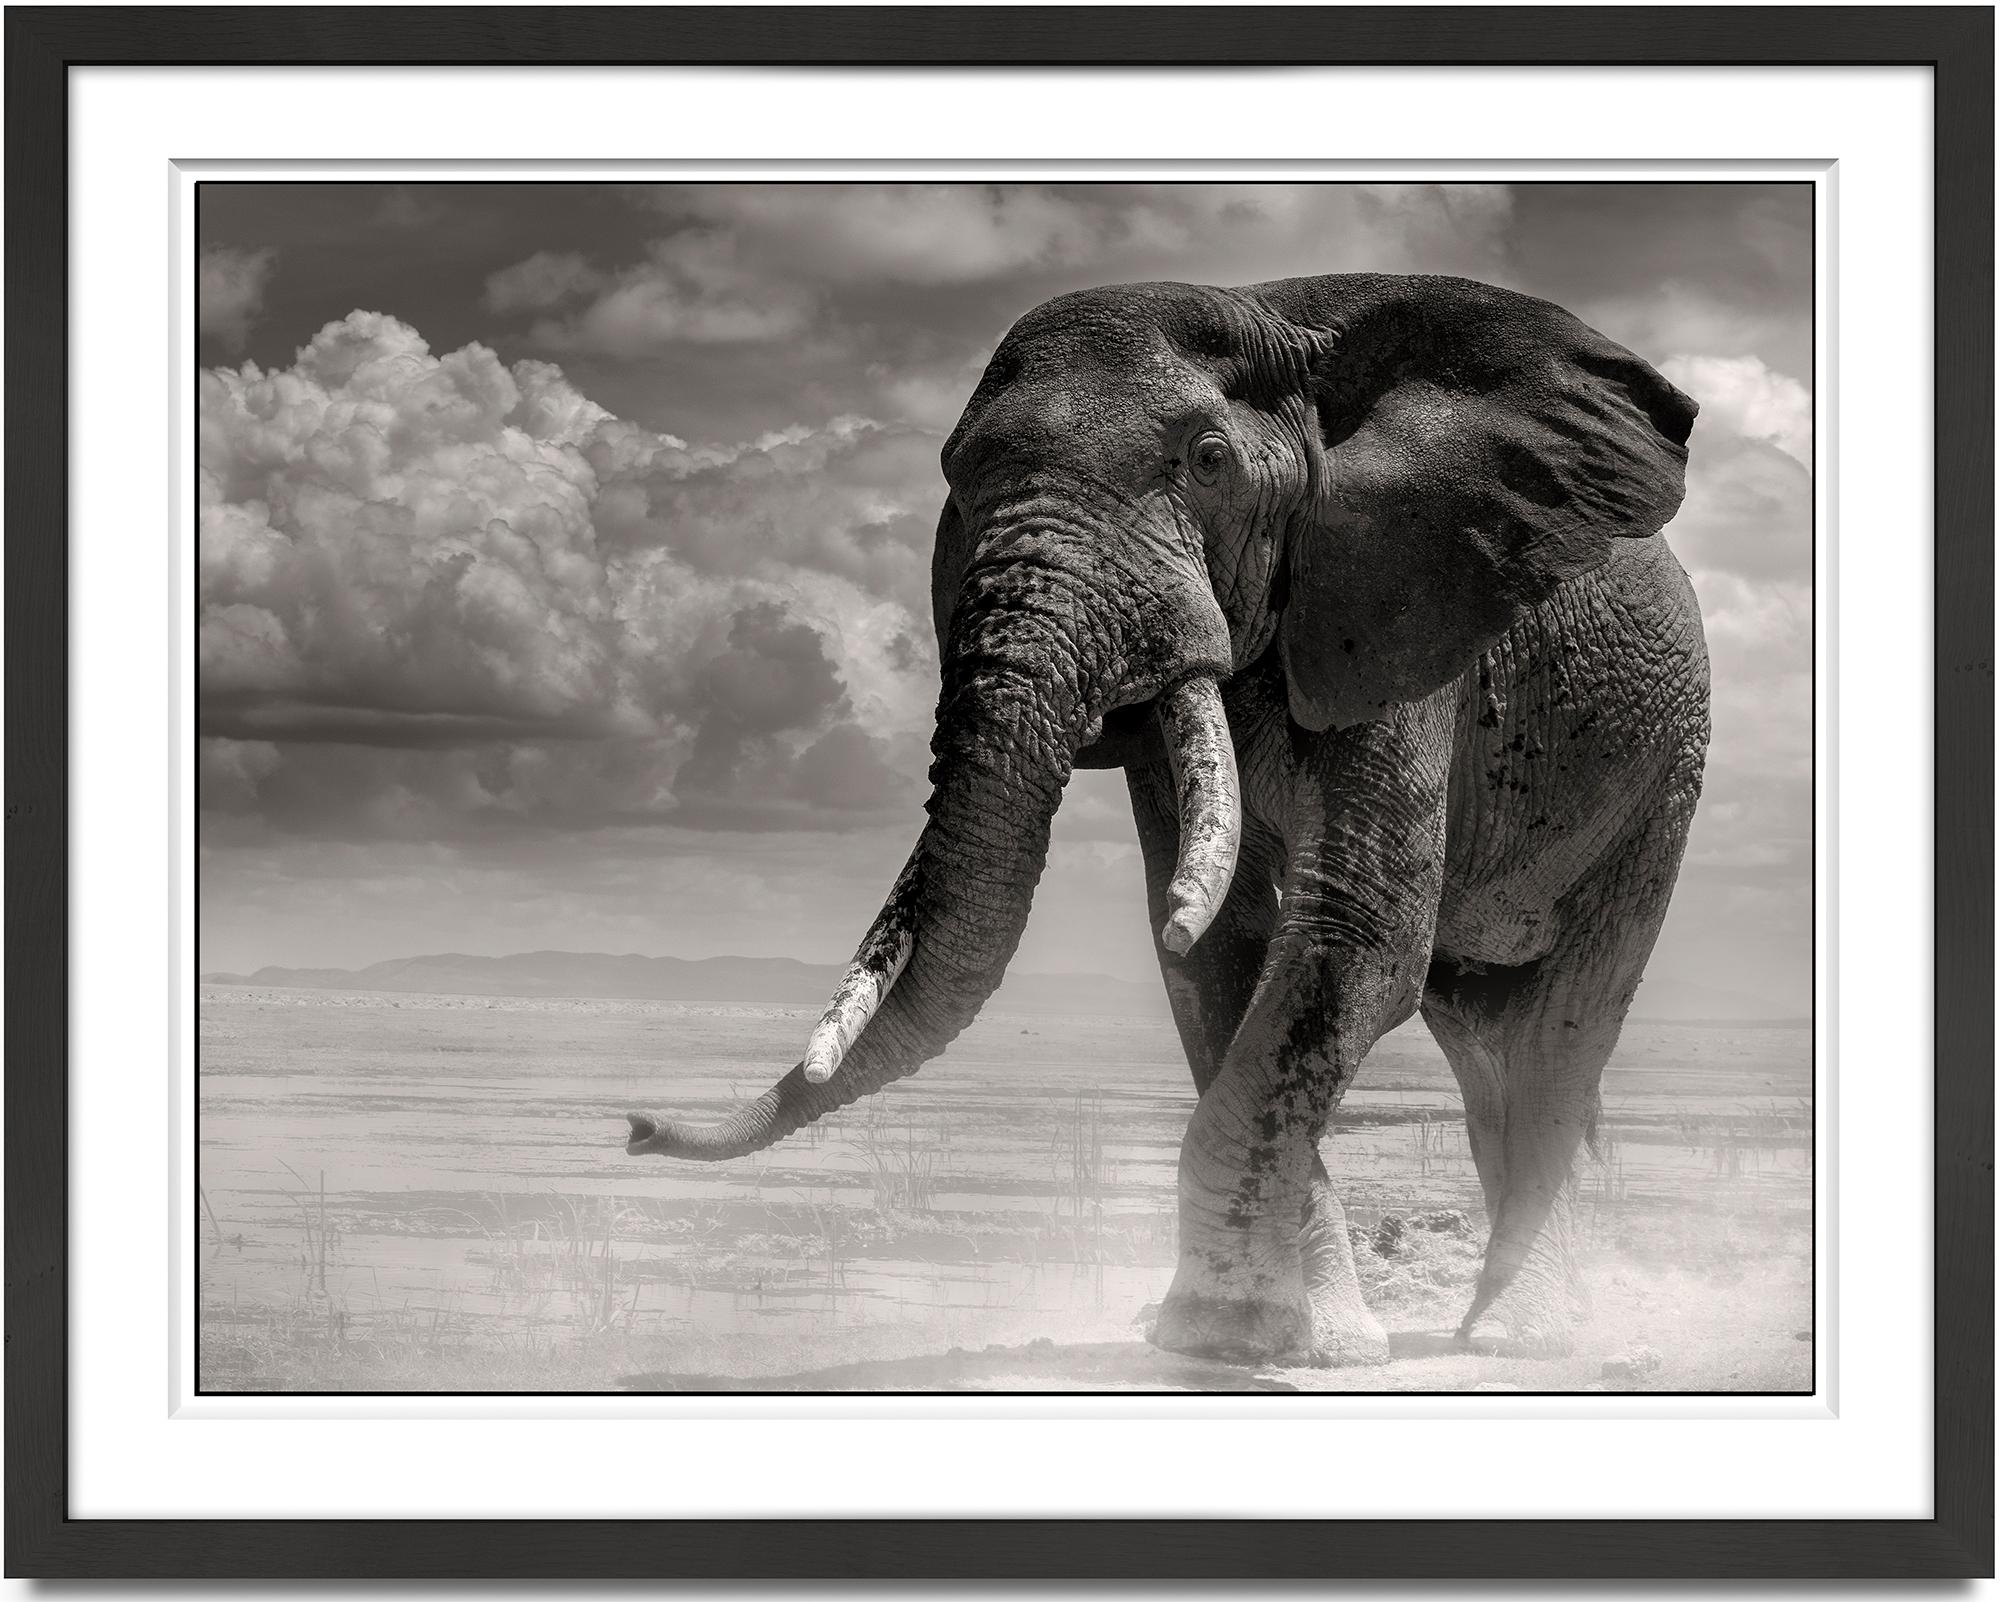 Elefantenschwanz aus dem Marsch, Tier-Schwarz-Weiß-Fotografie – Photograph von Joachim Schmeisser